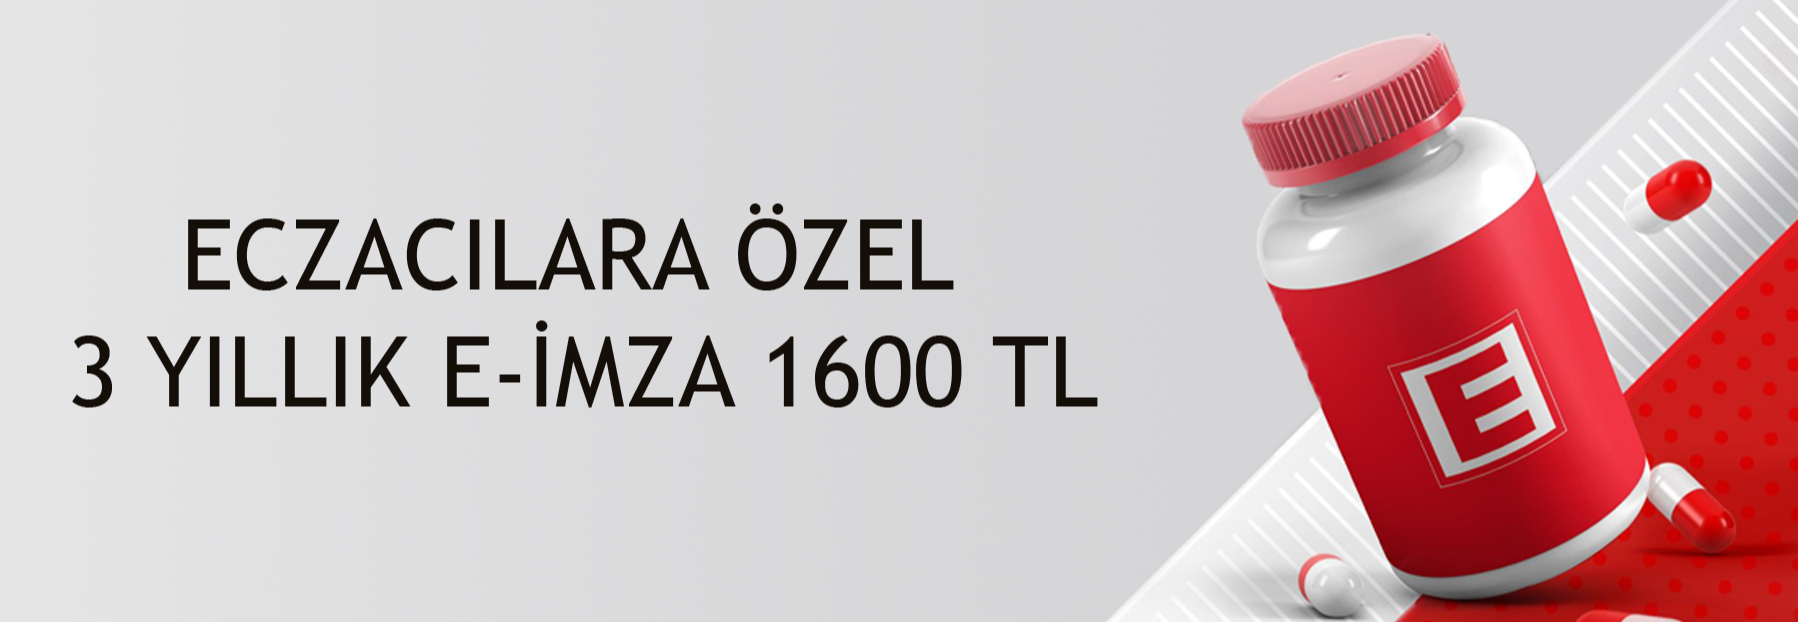 ECZACILARA ÖZEL 3 YILLIK E-İMZA 1600 TL